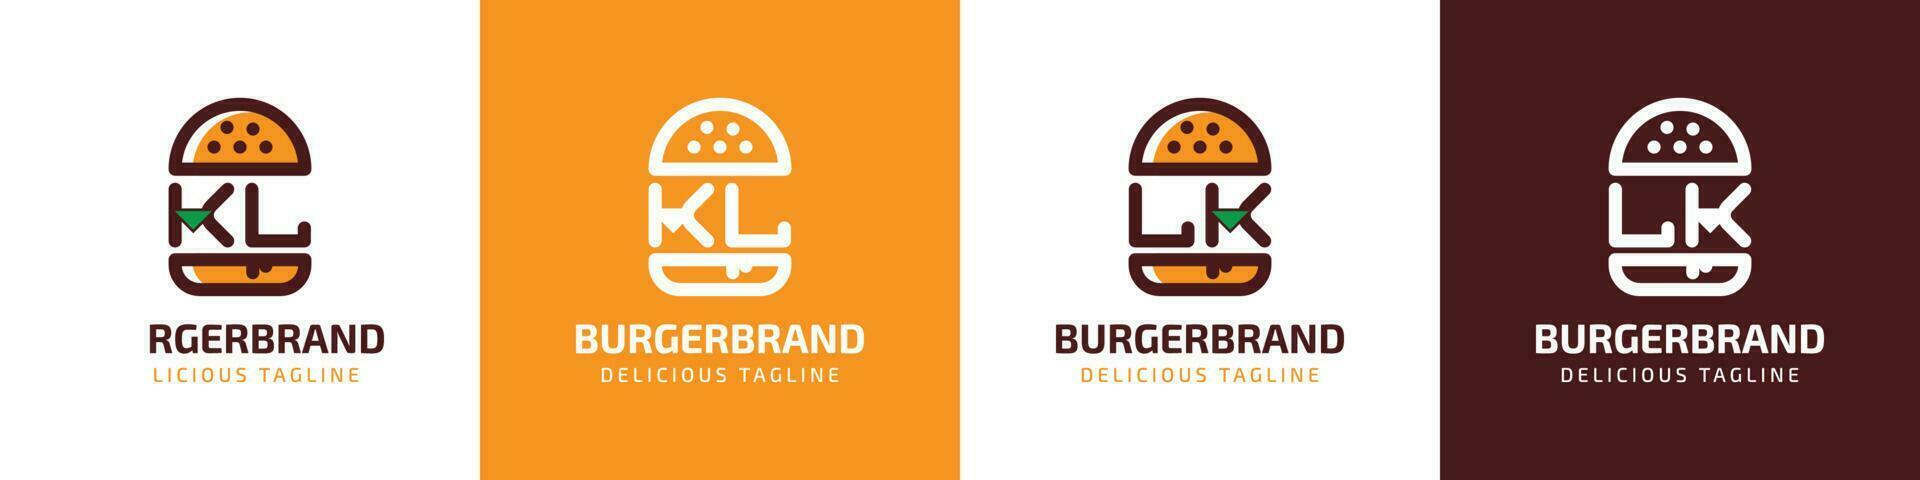 brev kl och lk burger logotyp, lämplig för några företag relaterad till burger med kl eller lk initialer. vektor